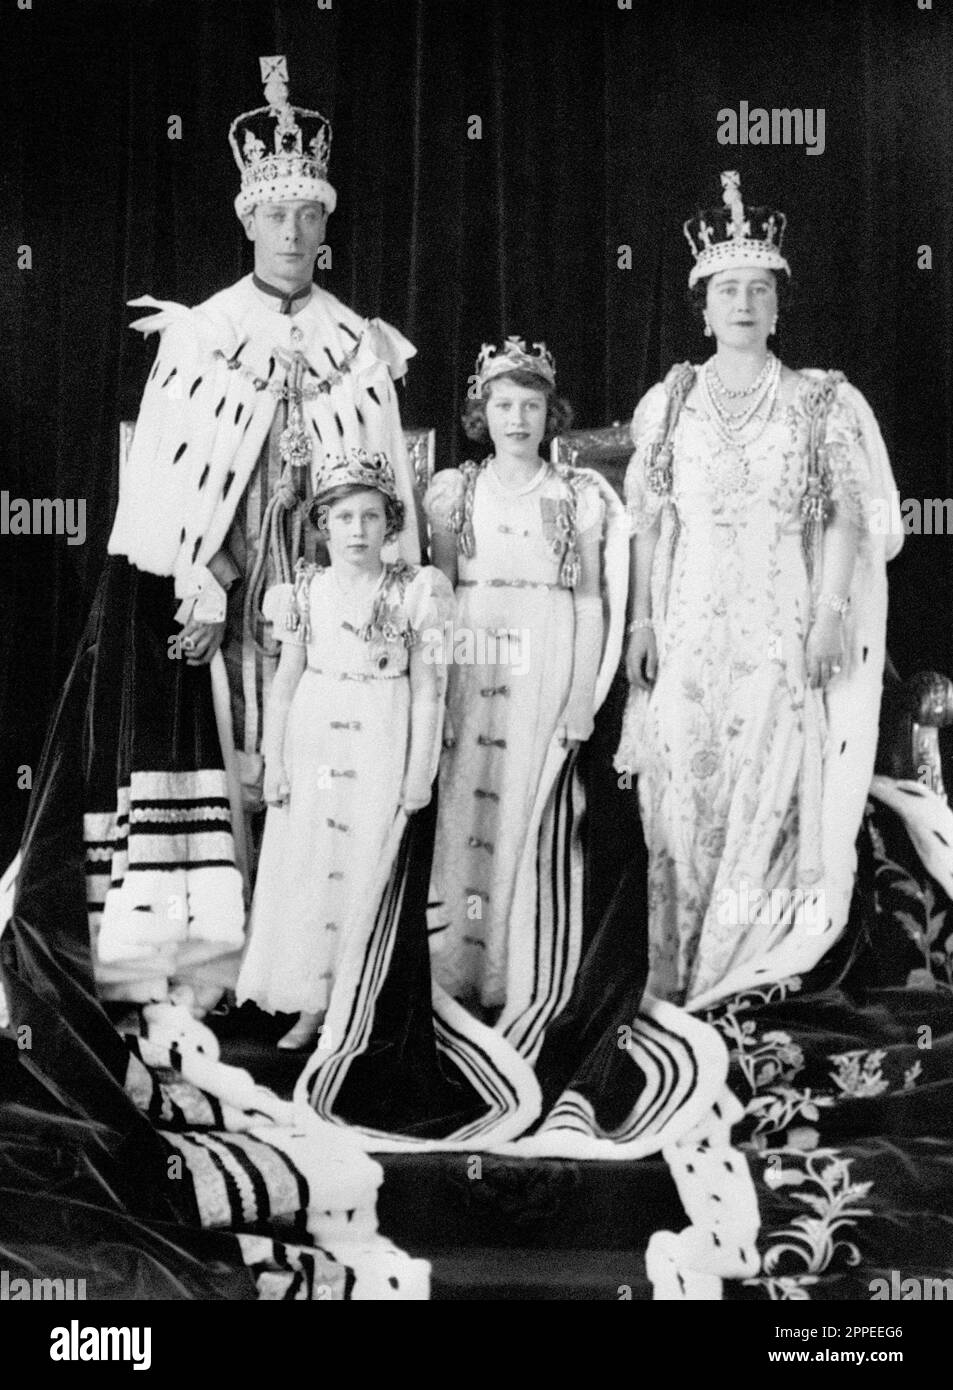 Datei Foto vom 12.05/37 von König George VI. Und Königin Elizabeth mit ihren Töchtern Prinzessin Elizabeth und Prinzessin Margaret Rose nach der Krönung des Herzogs von York als König George VI Die Krönung von König Karl III. Findet am 6. Mai in einer Zeremonie statt, die in 1.000 Jahre Geschichte mündet. Der König wird mit der historischen St. Edward's Krone gekrönt - mit der auch seine Mutter, Königin Elizabeth II., gekrönt wurde. Ausgabedatum: Montag, 24. April 2023. Stockfoto